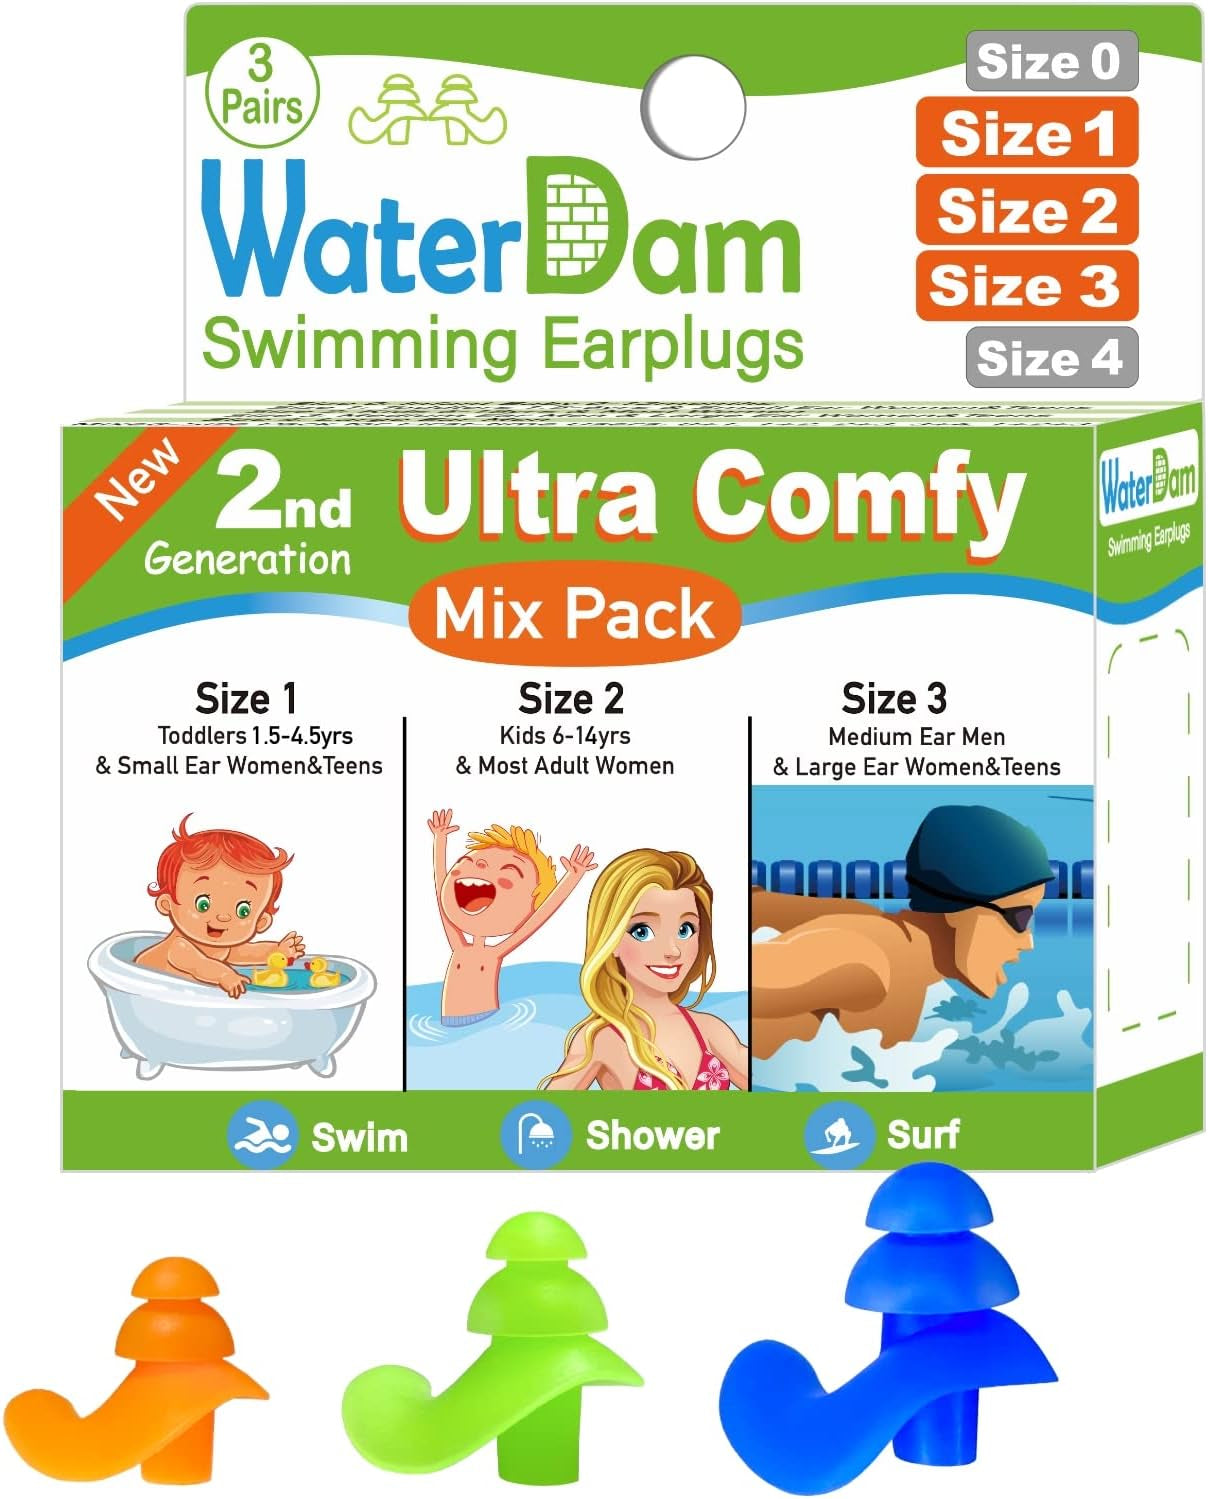 A-Series Swimming Ear Plugs Ultra Comfy Great Waterproof Earplugs (Mixed Sizes, Size 2A+2: Kids Teens Medium Ear Women Small Ear Men (Green Blue))